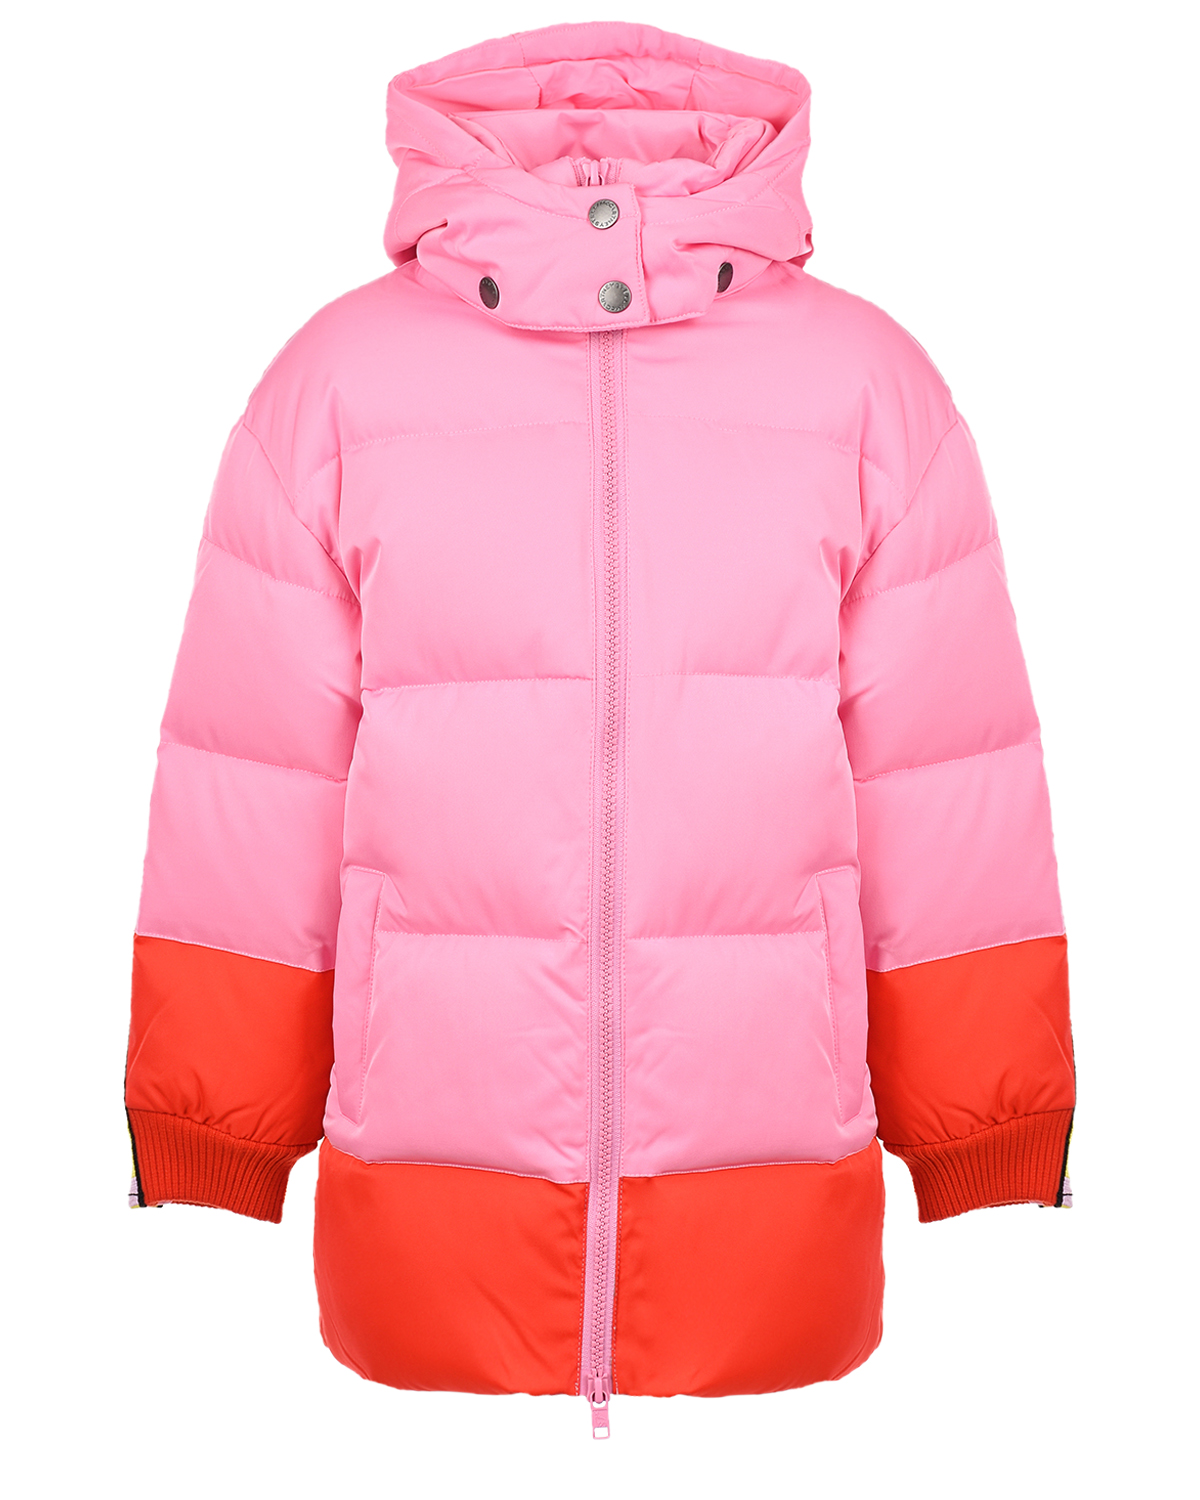 Удлиненная куртка с лампасами на рукавах Stella McCartney детская, размер 104, цвет розовый - фото 1